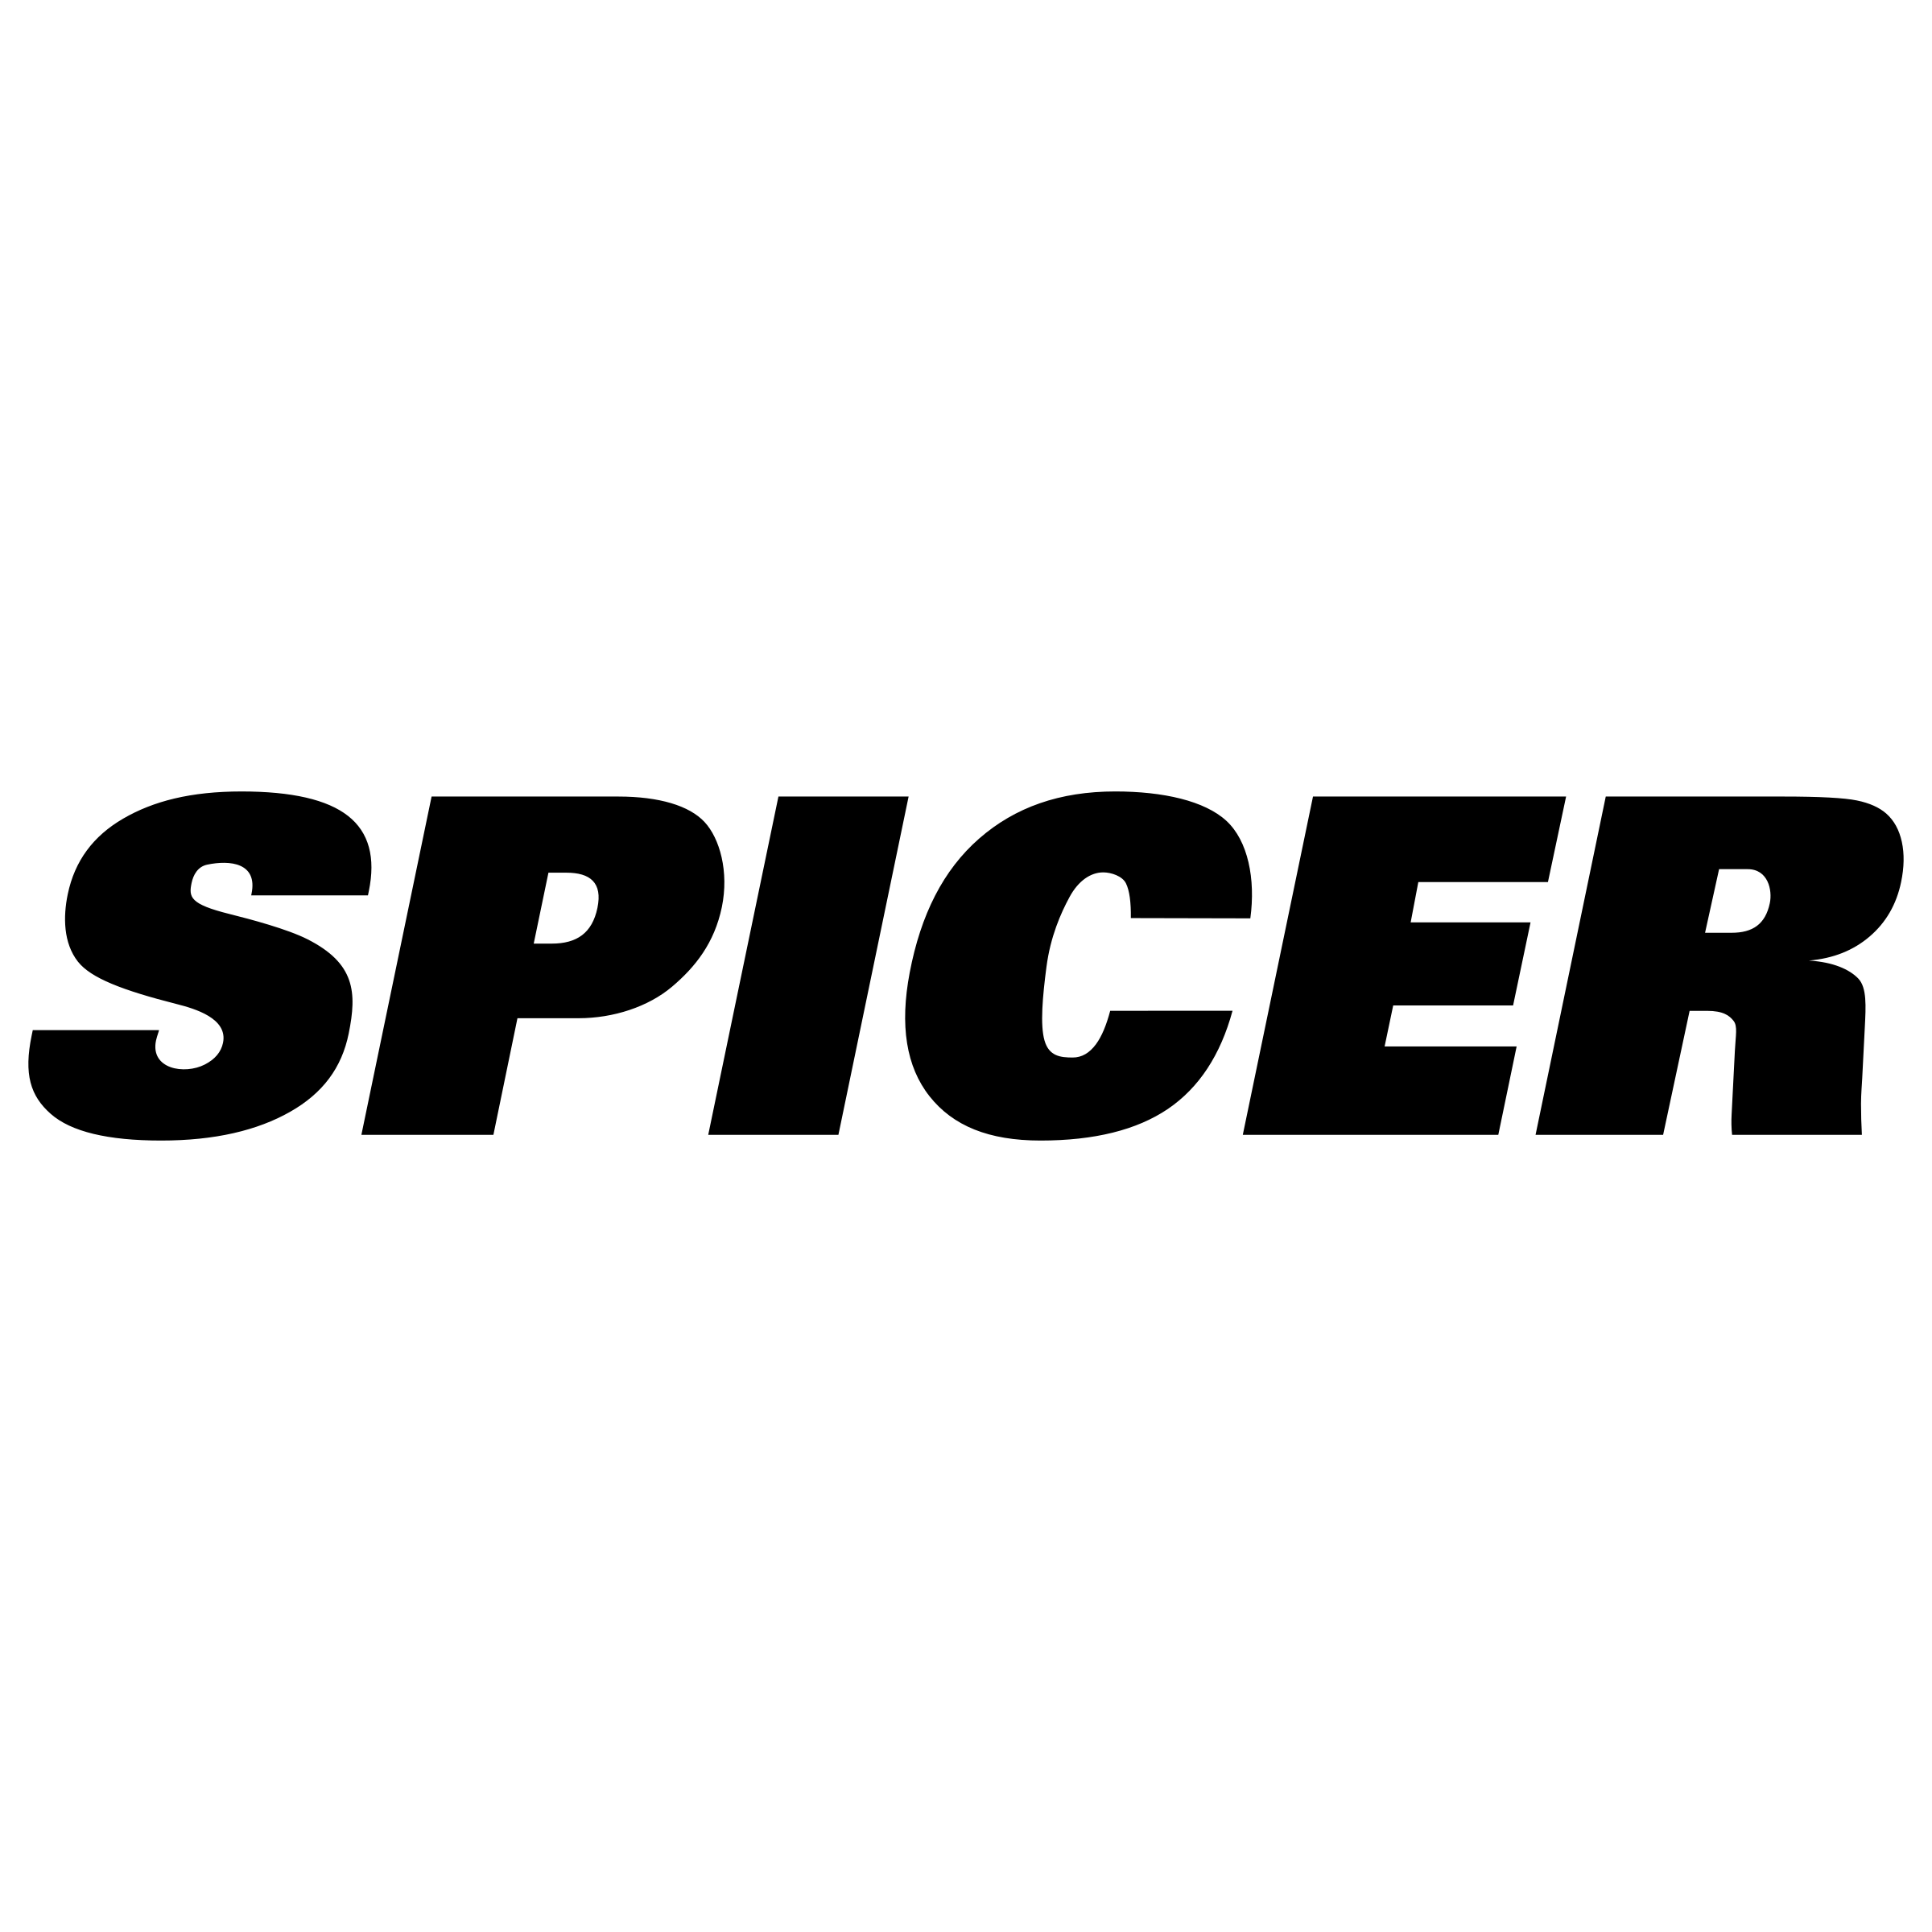 Spicer Logo - Spicer Logo PNG Transparent & SVG Vector - Freebie Supply